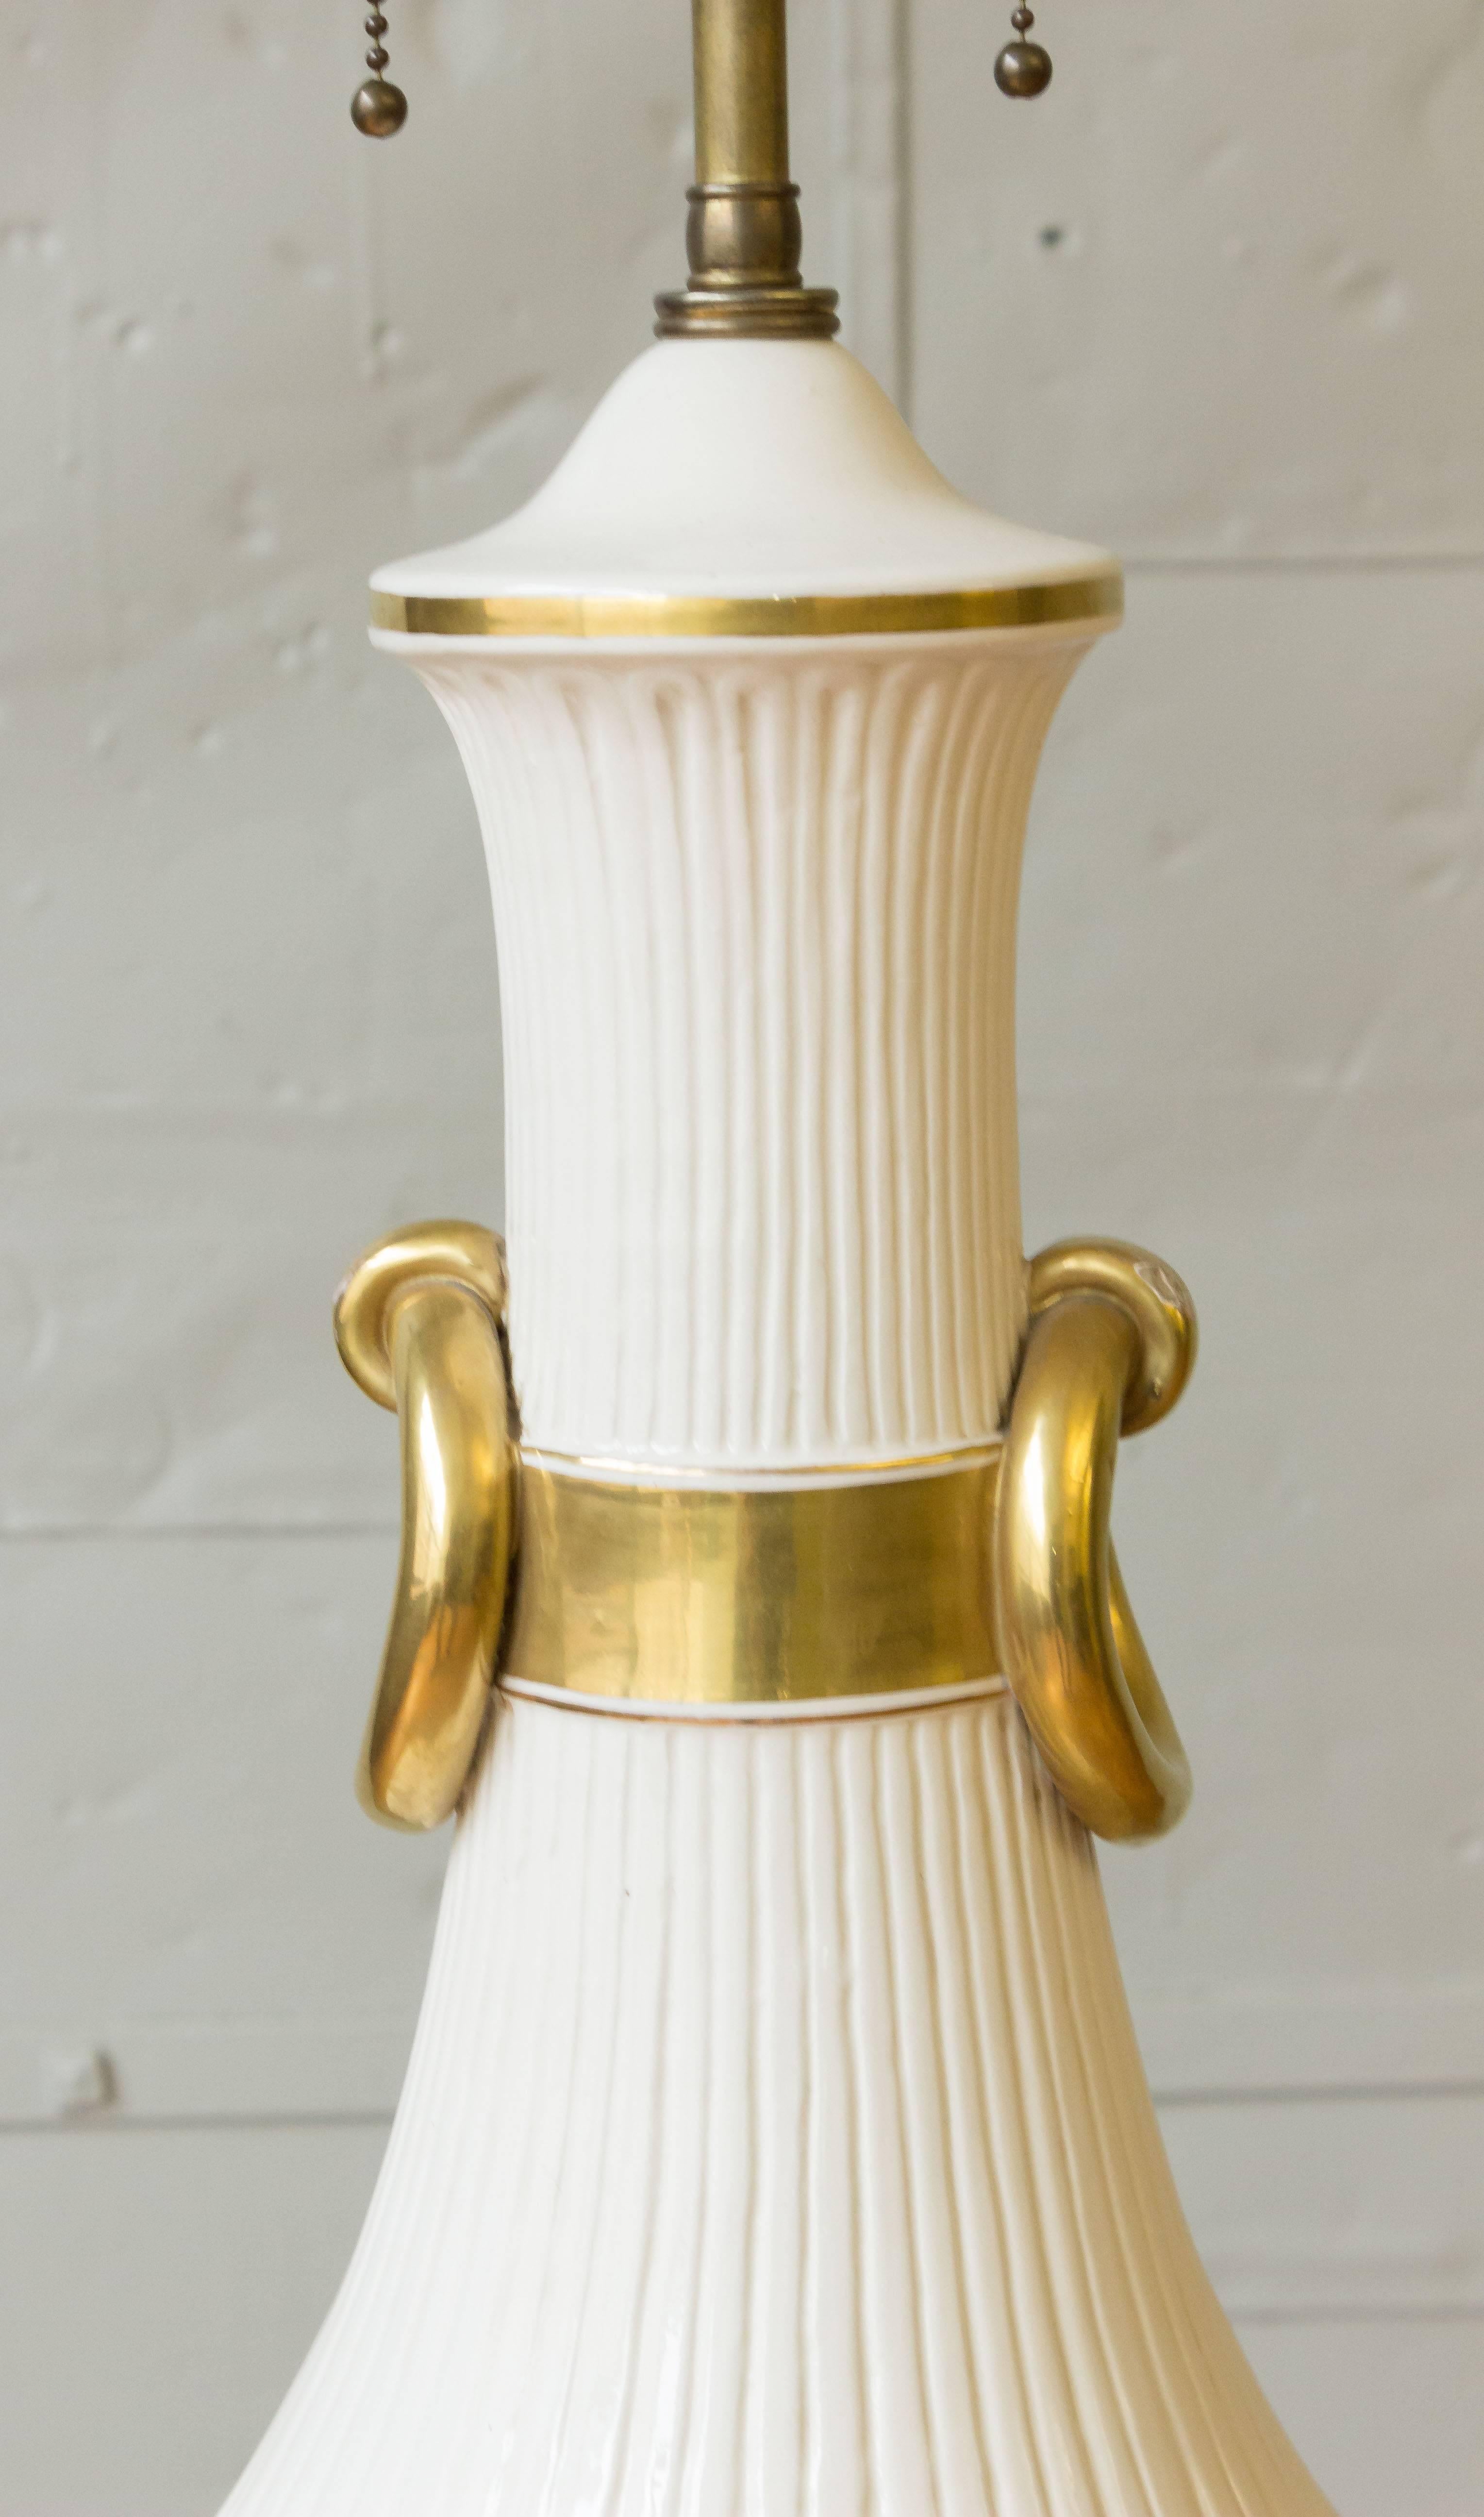 Très grande lampe française des années 1940 en porcelaine tendre blanche avec des accents dorés. Cette lampe française des années 1940 respire l'élégance et la sophistication avec son très grand corps en porcelaine tendre. D'une hauteur